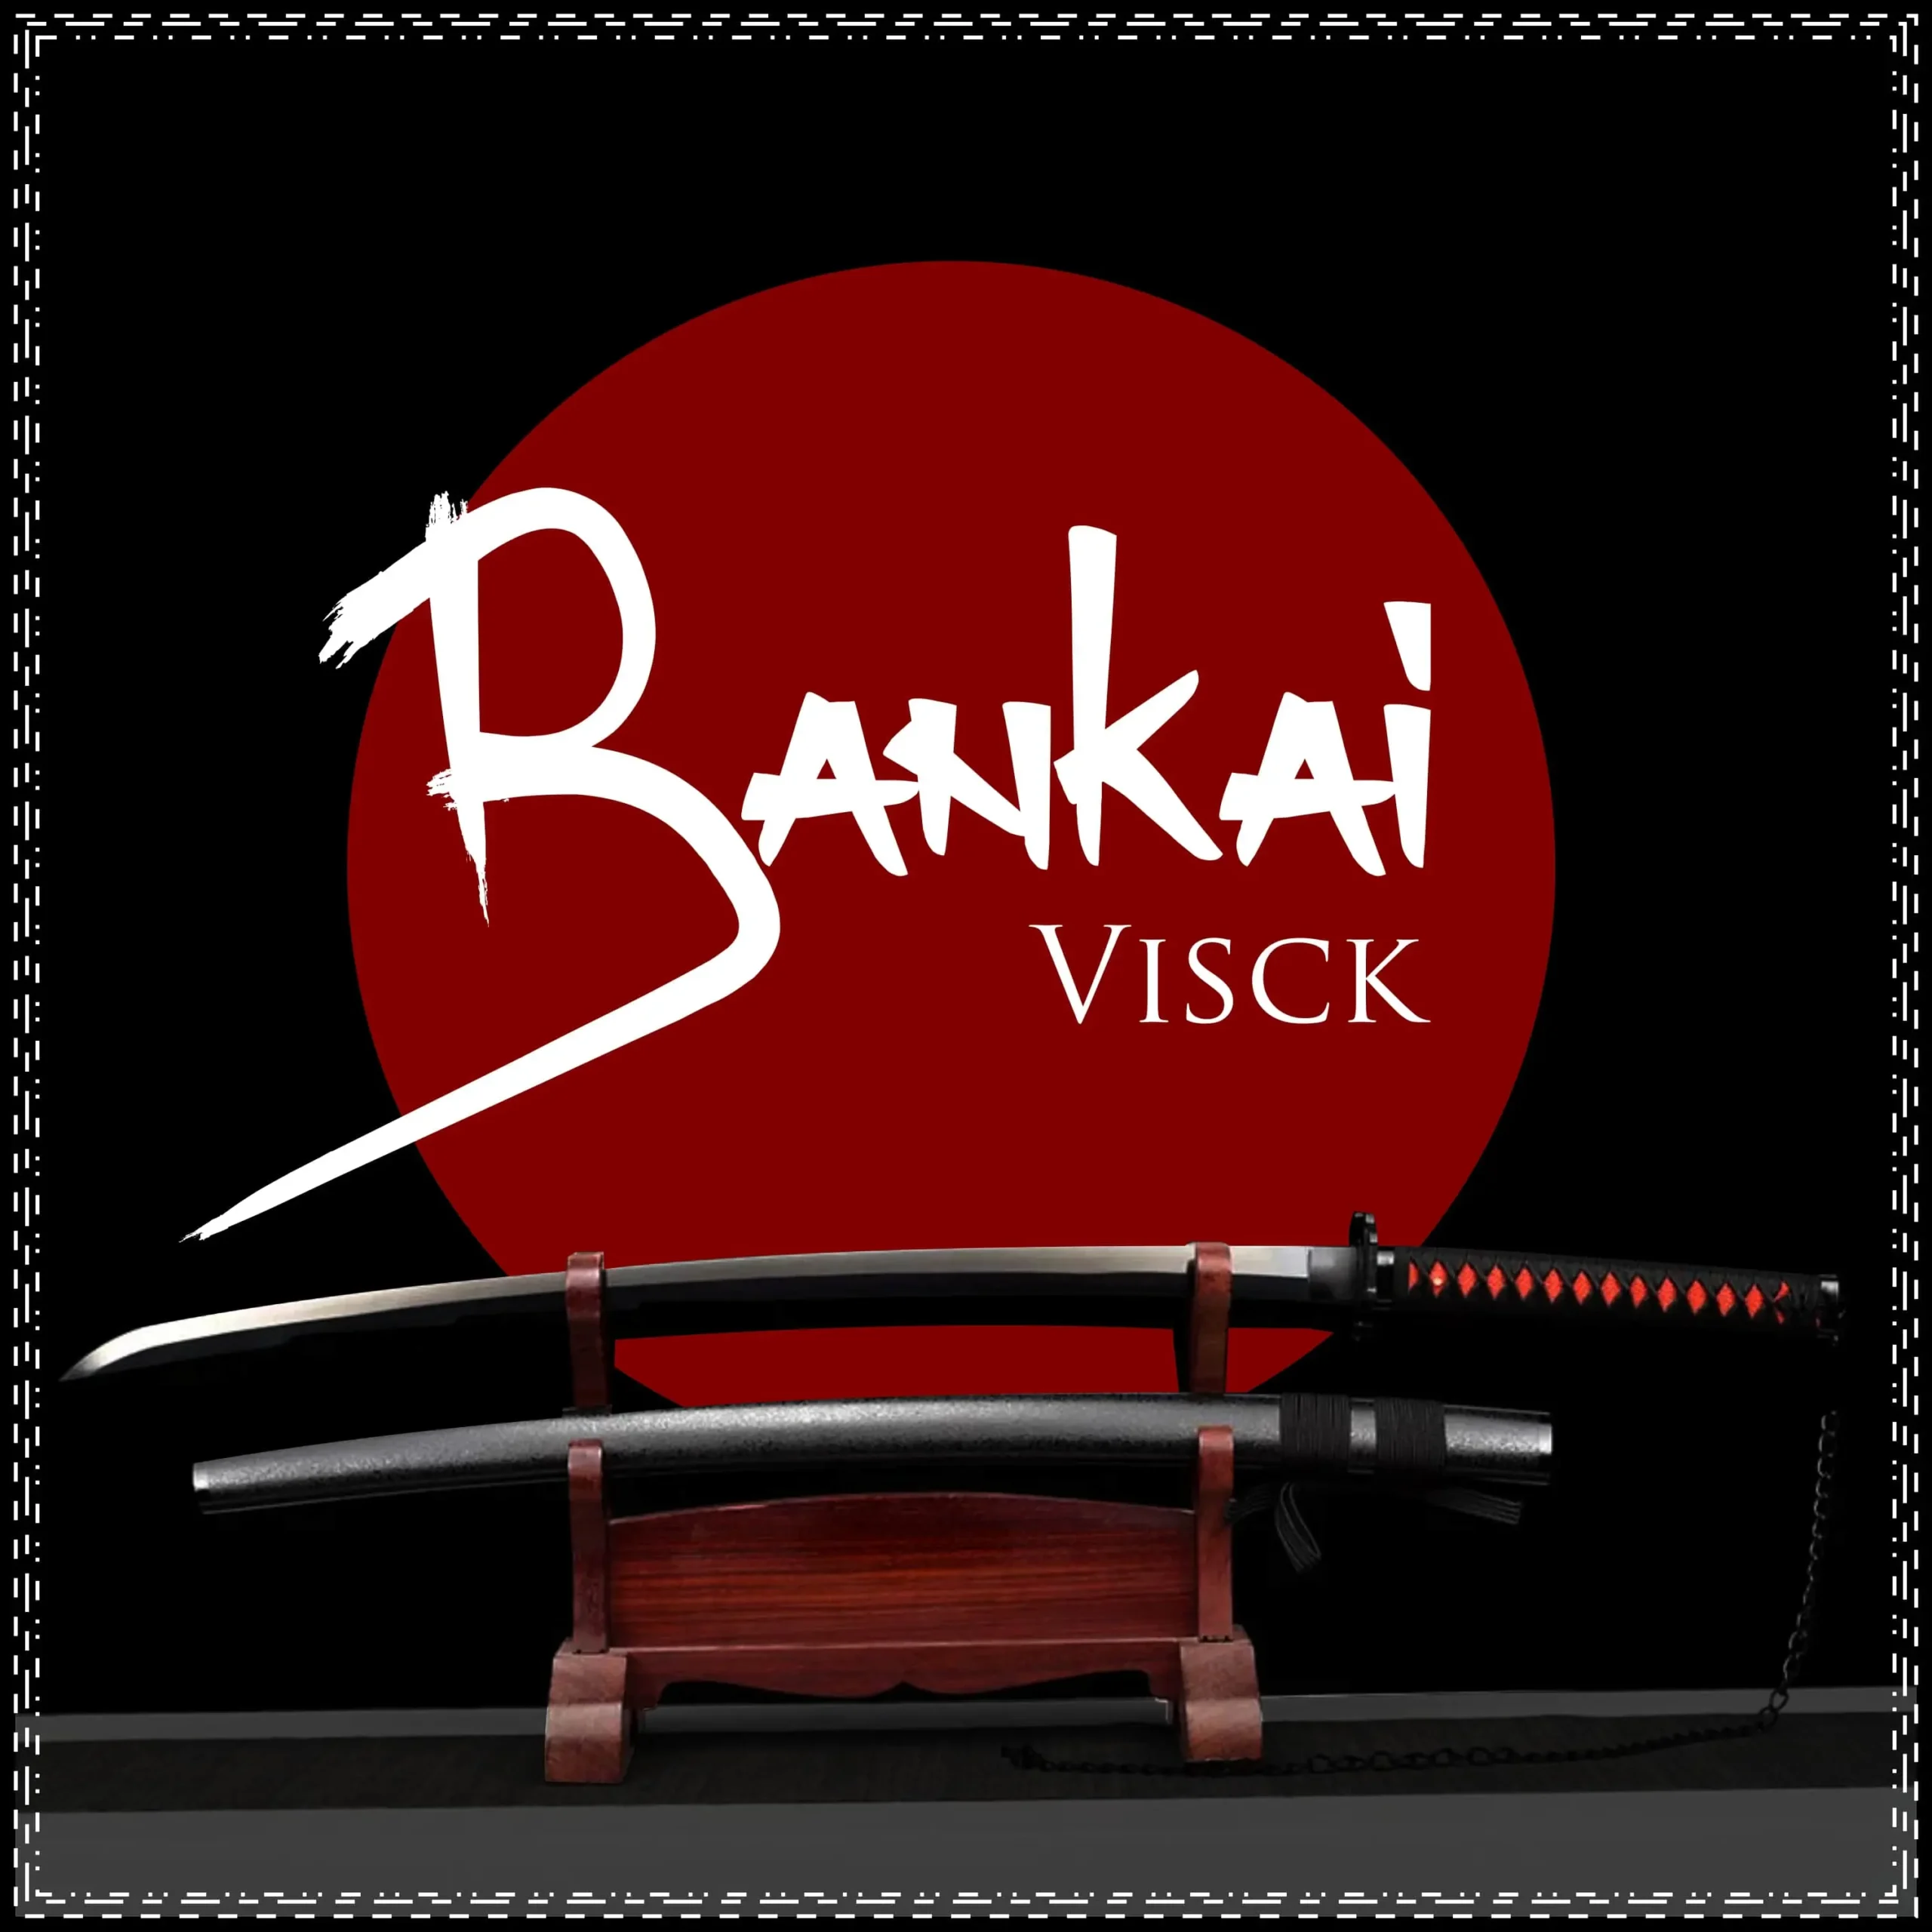 Visck - Bankai